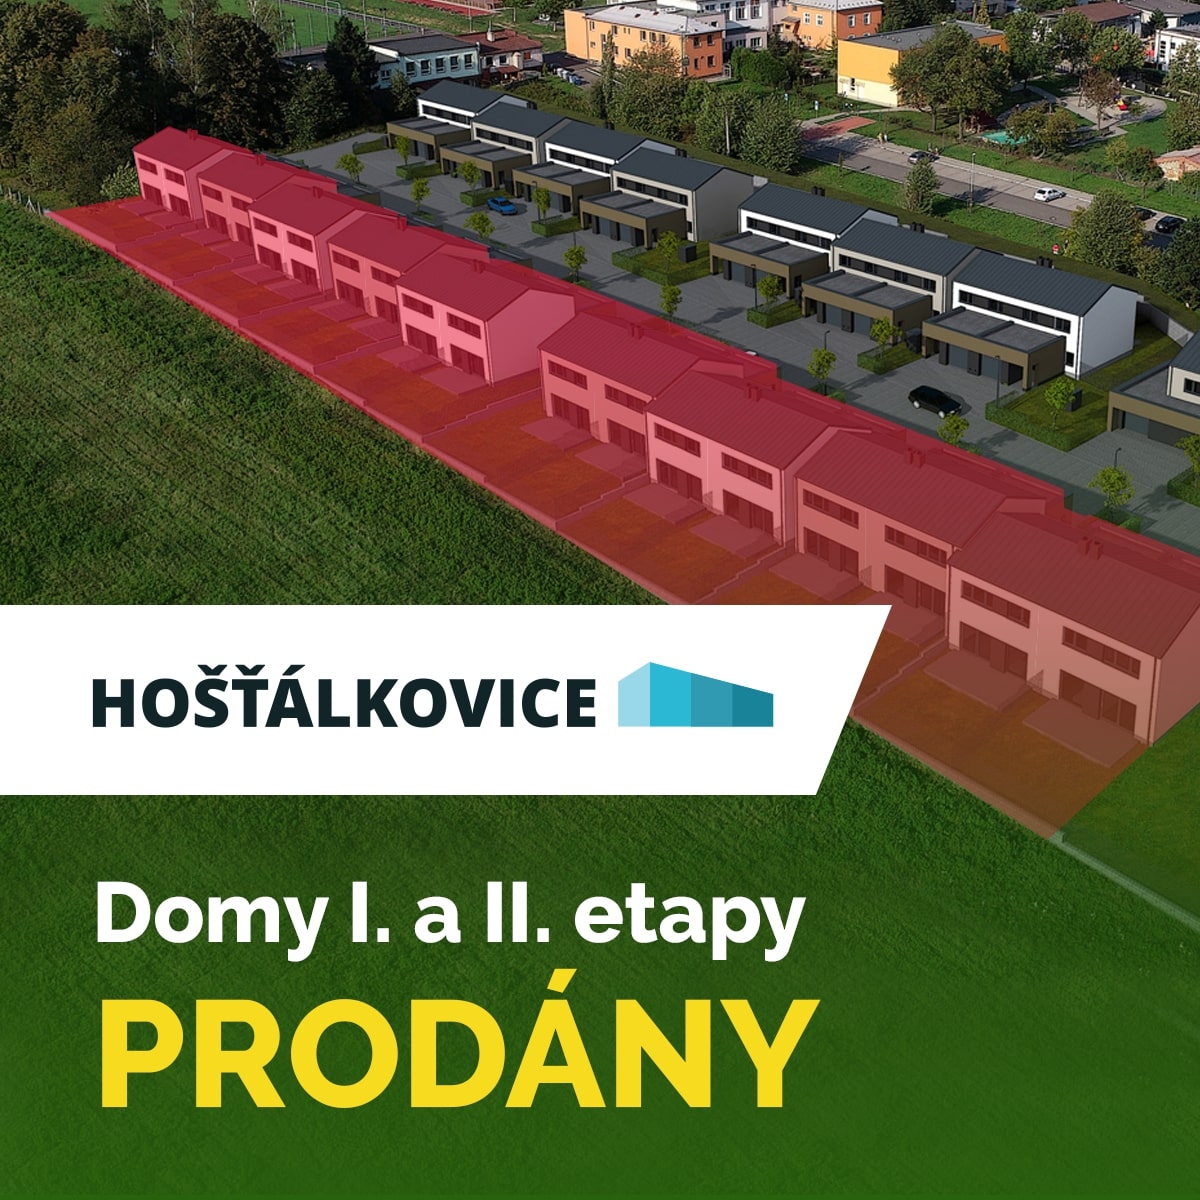 DOMY I. A II. ETAPY PRODÁNY !!!